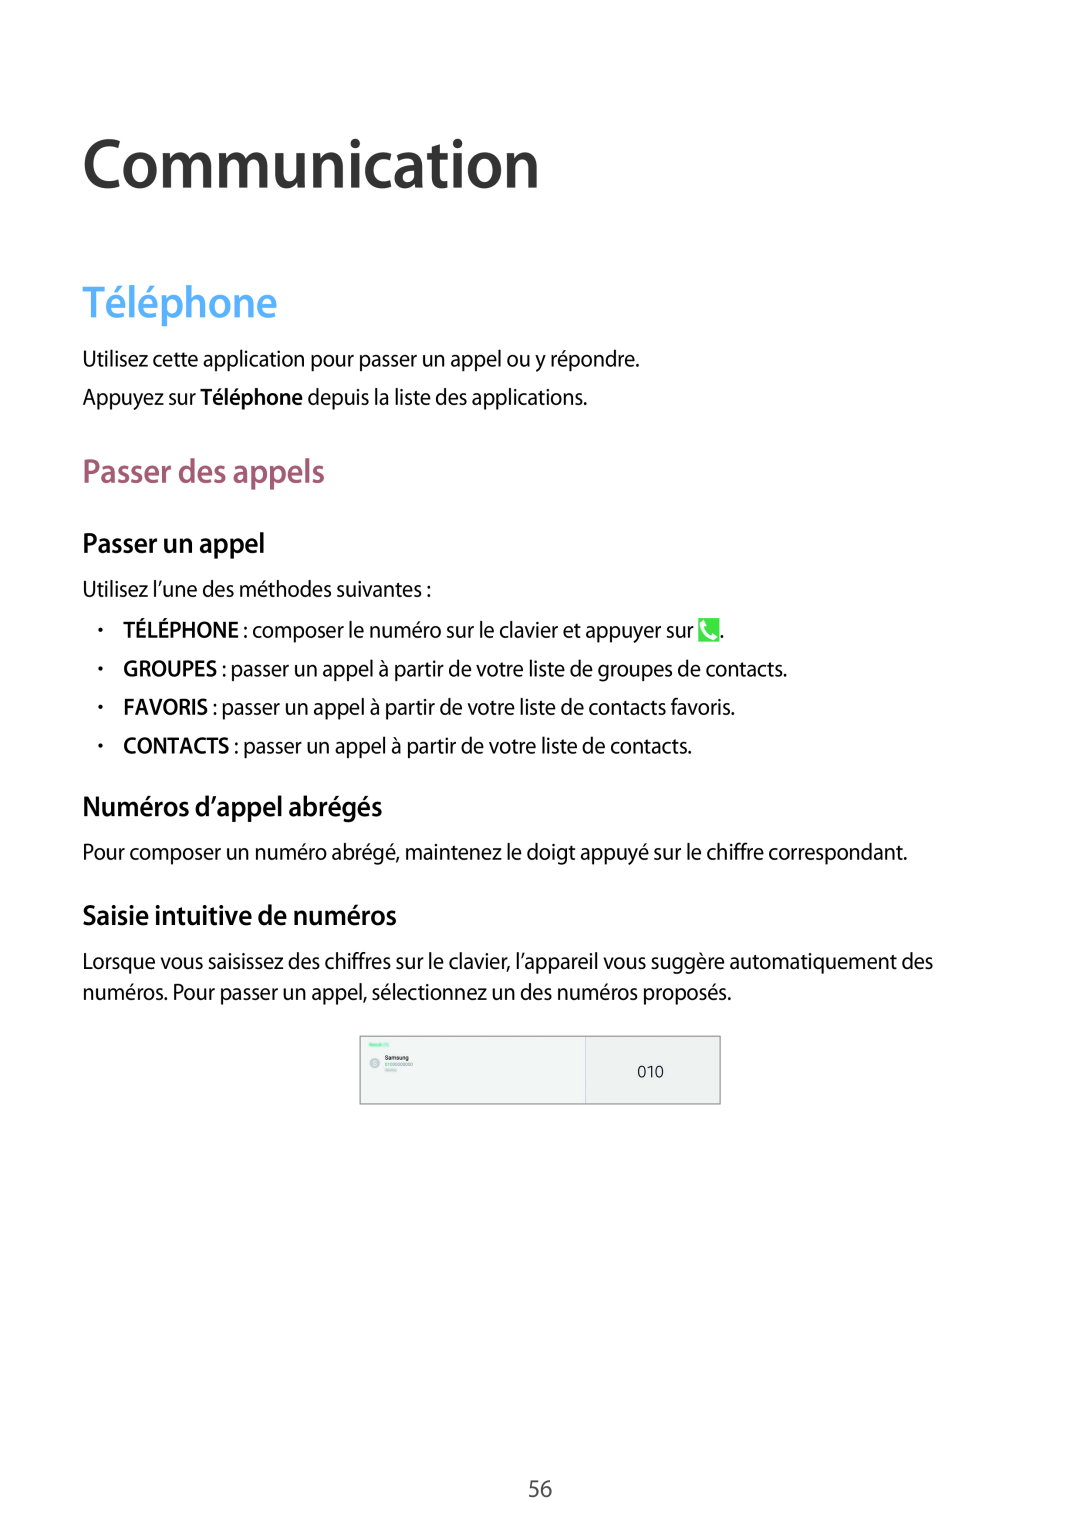 Samsung SM-P9050ZWAXEF manual Communication, Téléphone, Passer des appels, Passer un appel, Numéros d’appel abrégés 